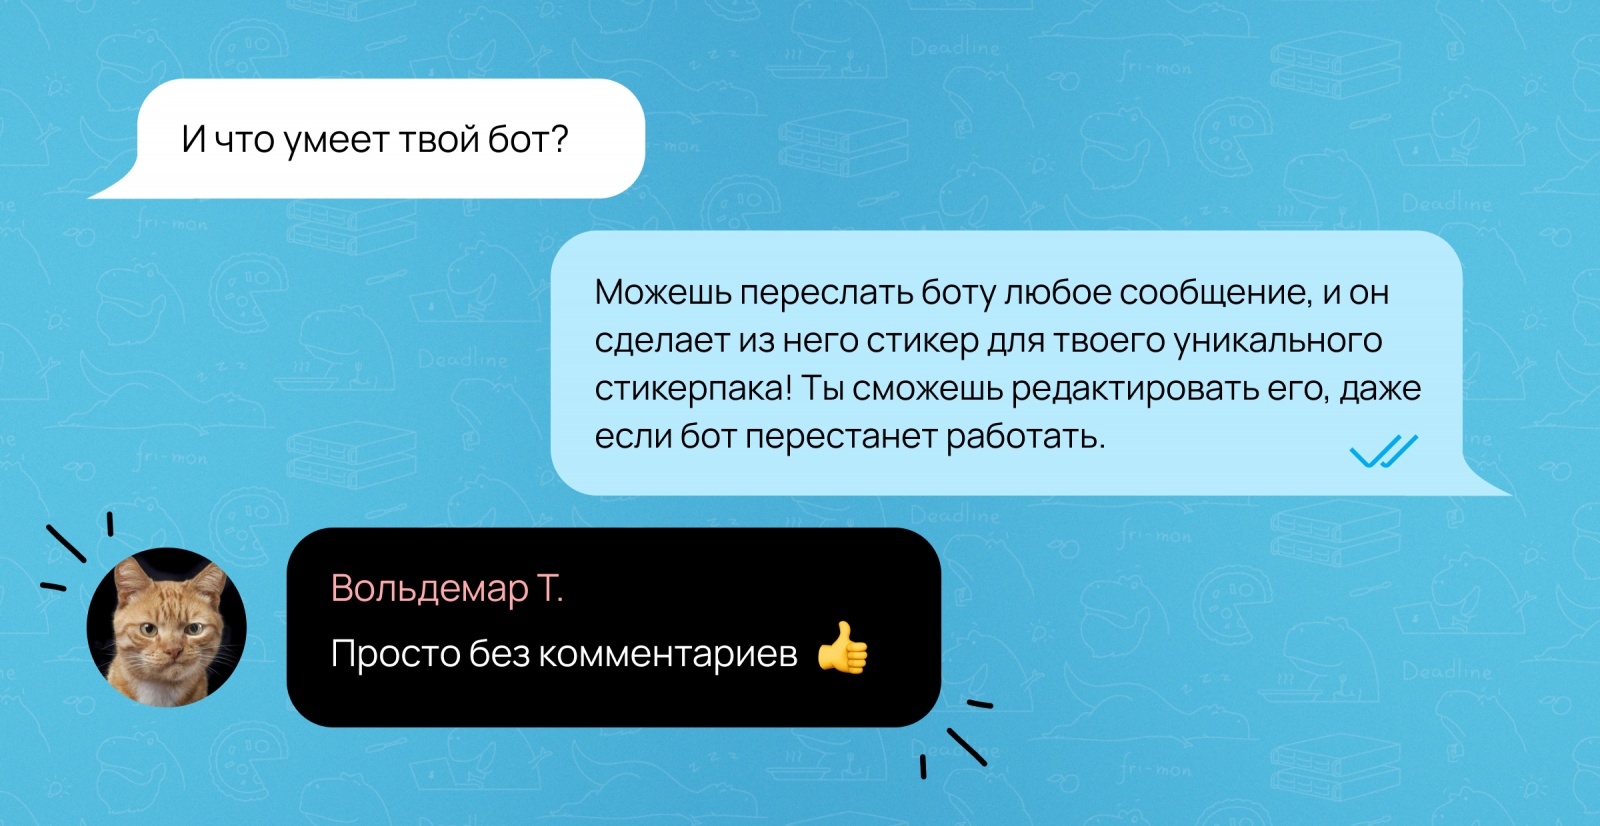 Фонд золотых цитат: как сгенерировать стикеры из сообщений в Telegram - 1